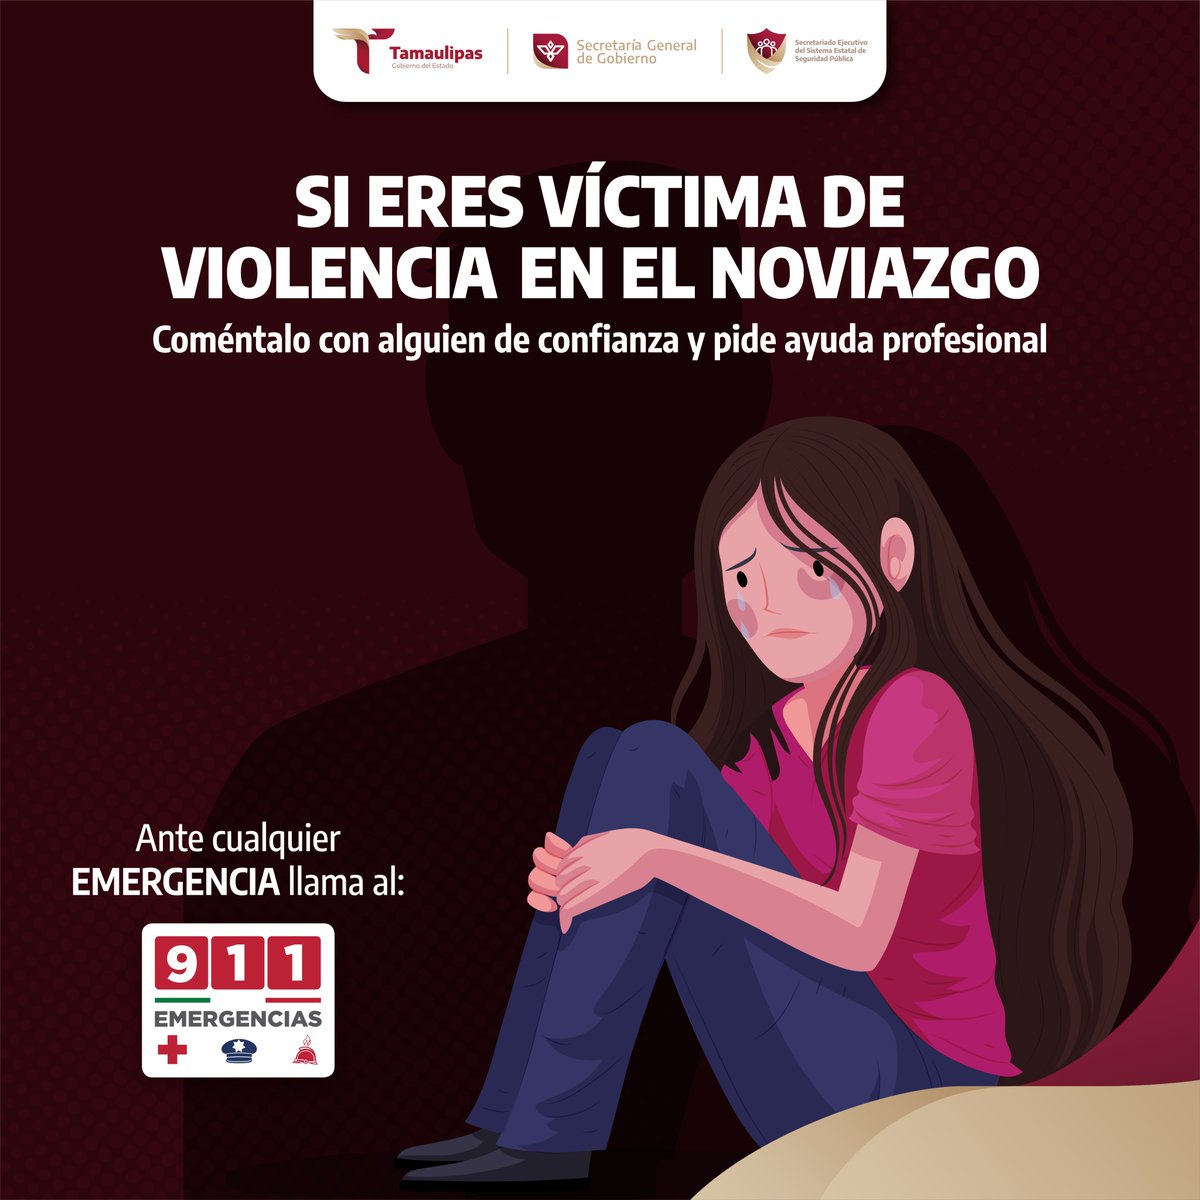 Tu seguridad es lo primero.

Si sufres violencia en tu relación, #ConfíaEnEl911.